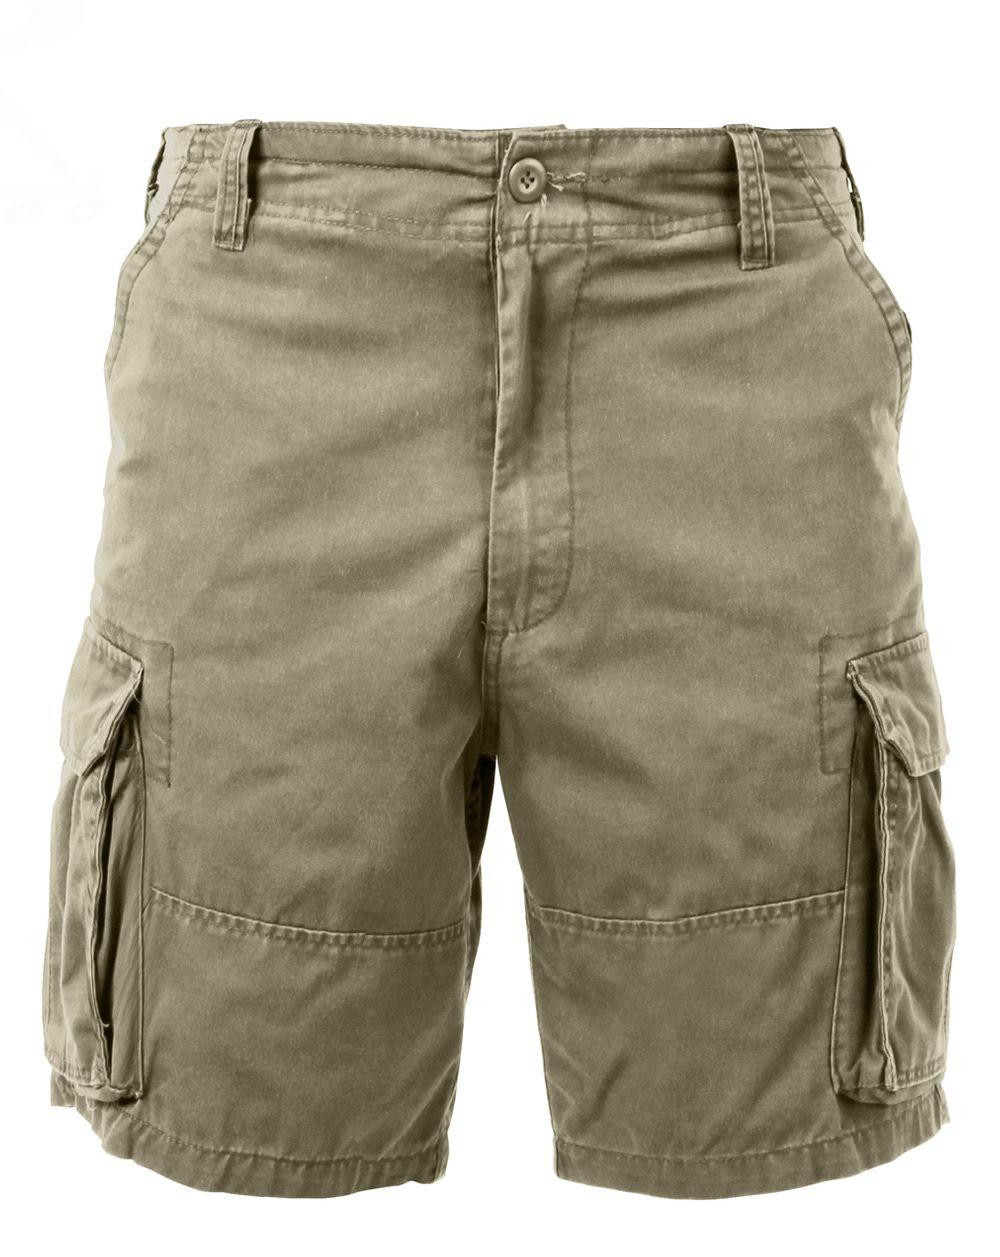 Rothco Cargo shorts (Khaki, S)